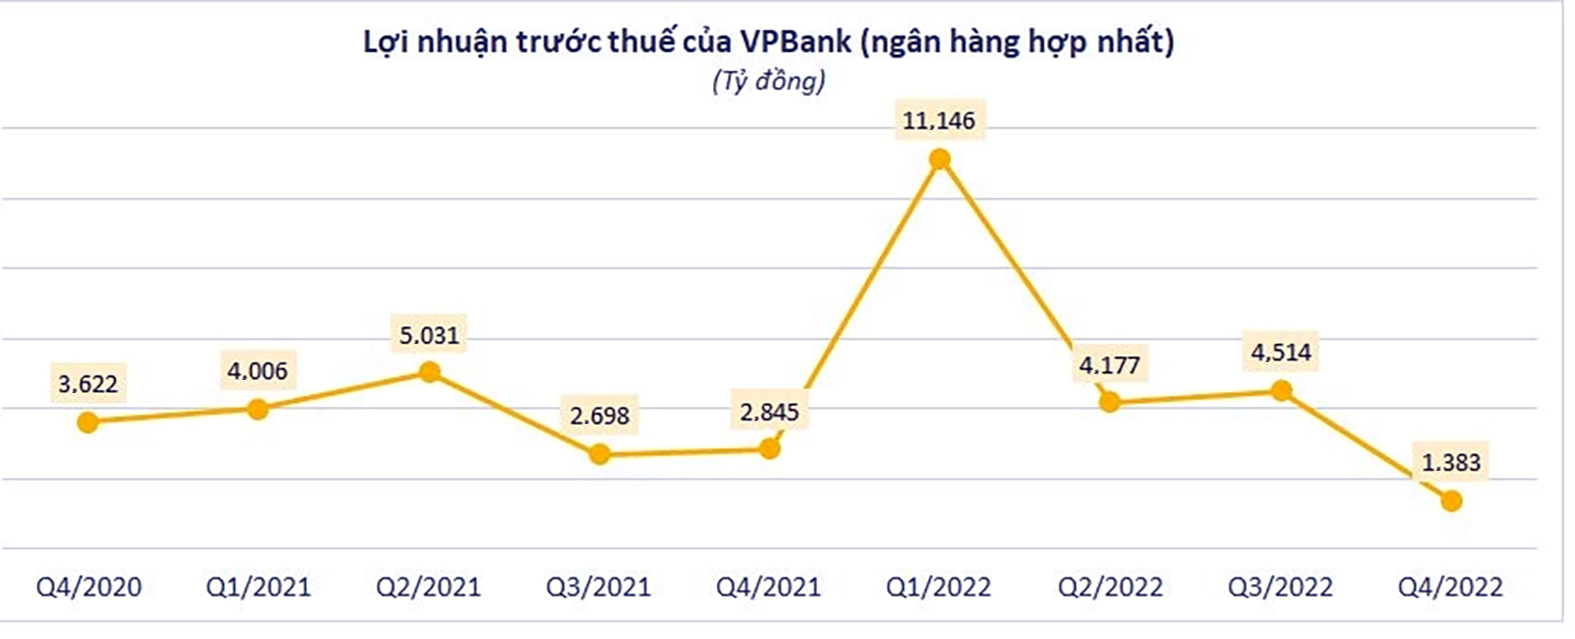  Nguồn: Báo cáo tài chính hợp nhất quý IV/2022 của VPB.